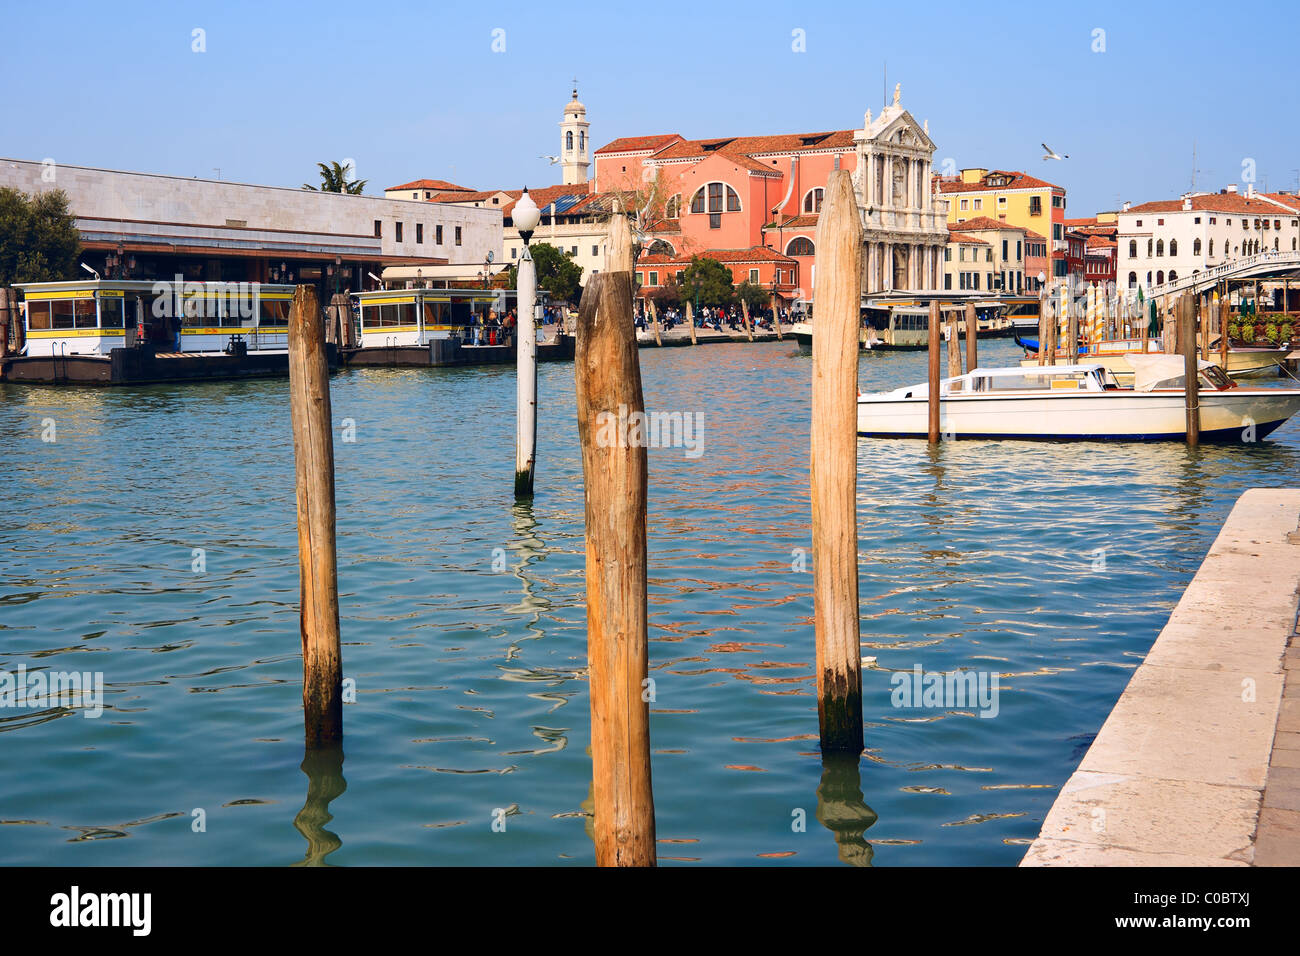 Grand canal. Venice, Italy Stock Photo